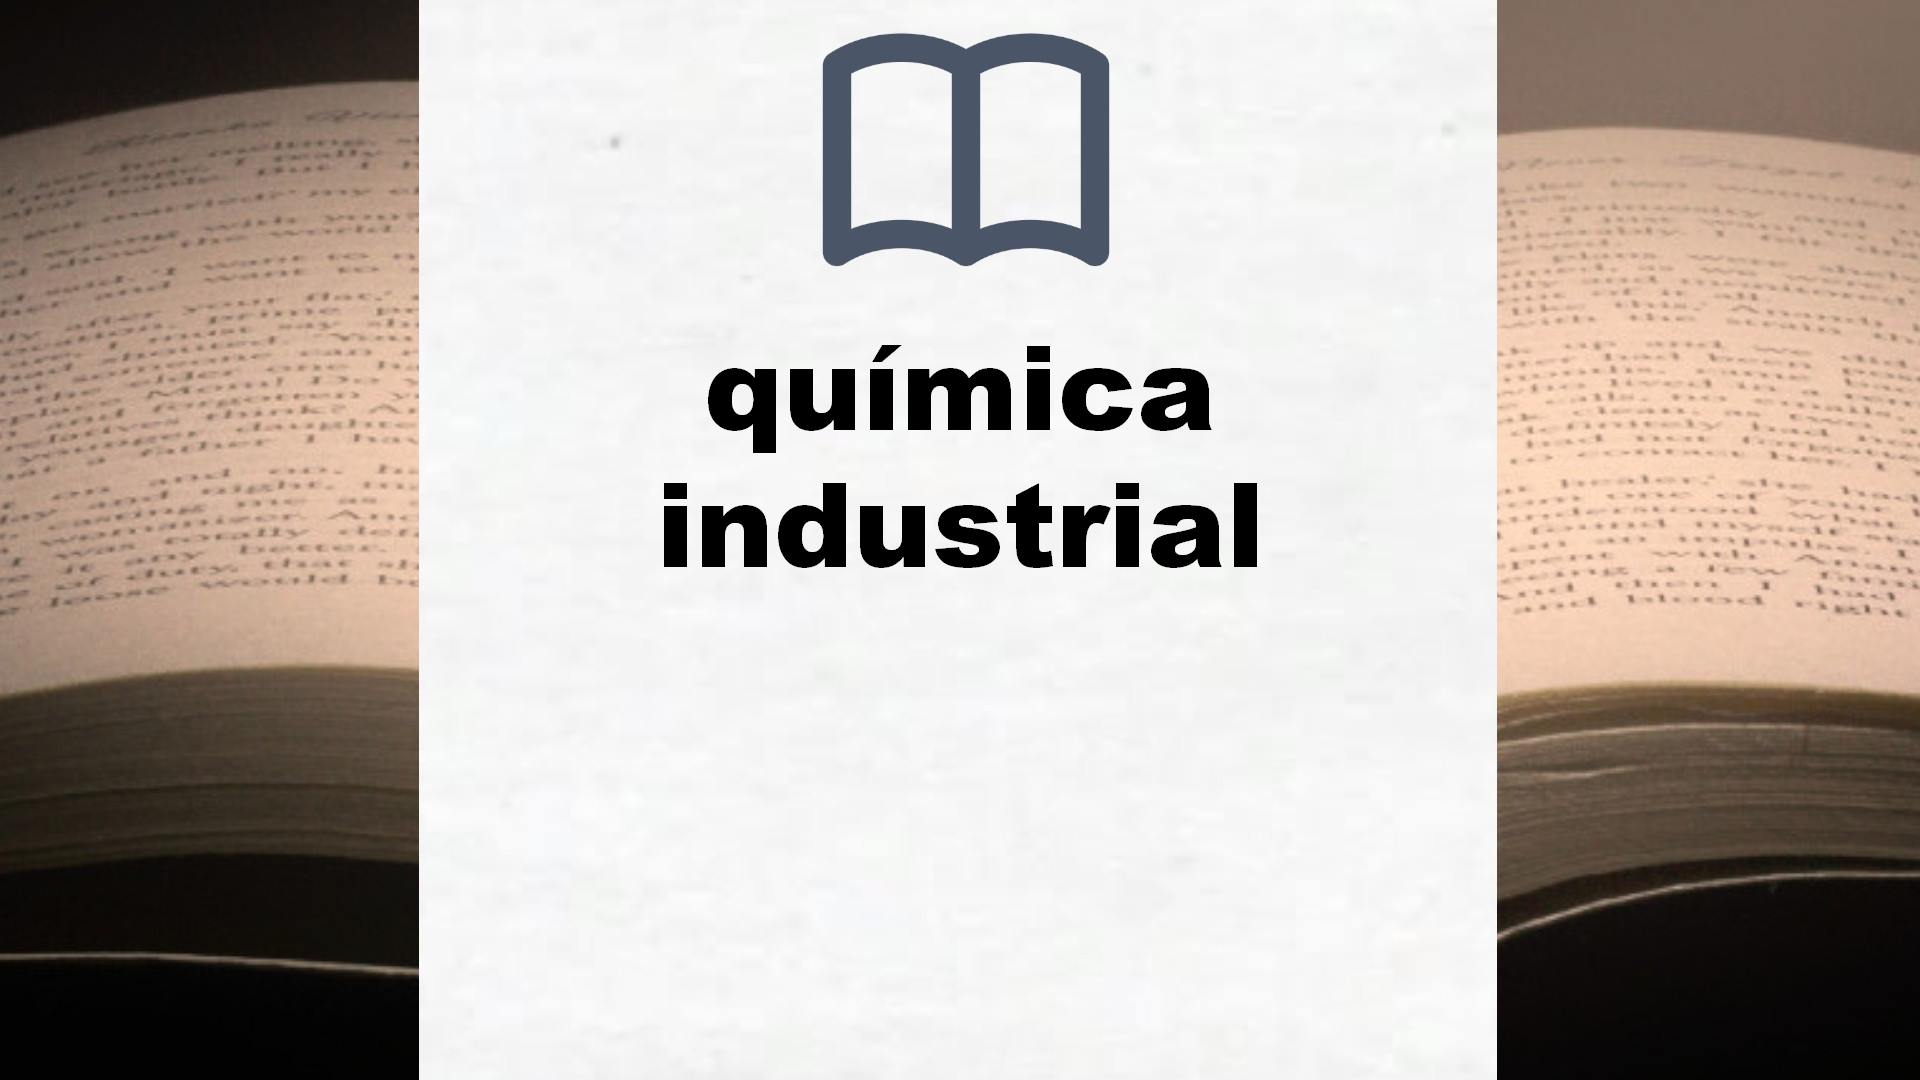 Libros sobre química industrial